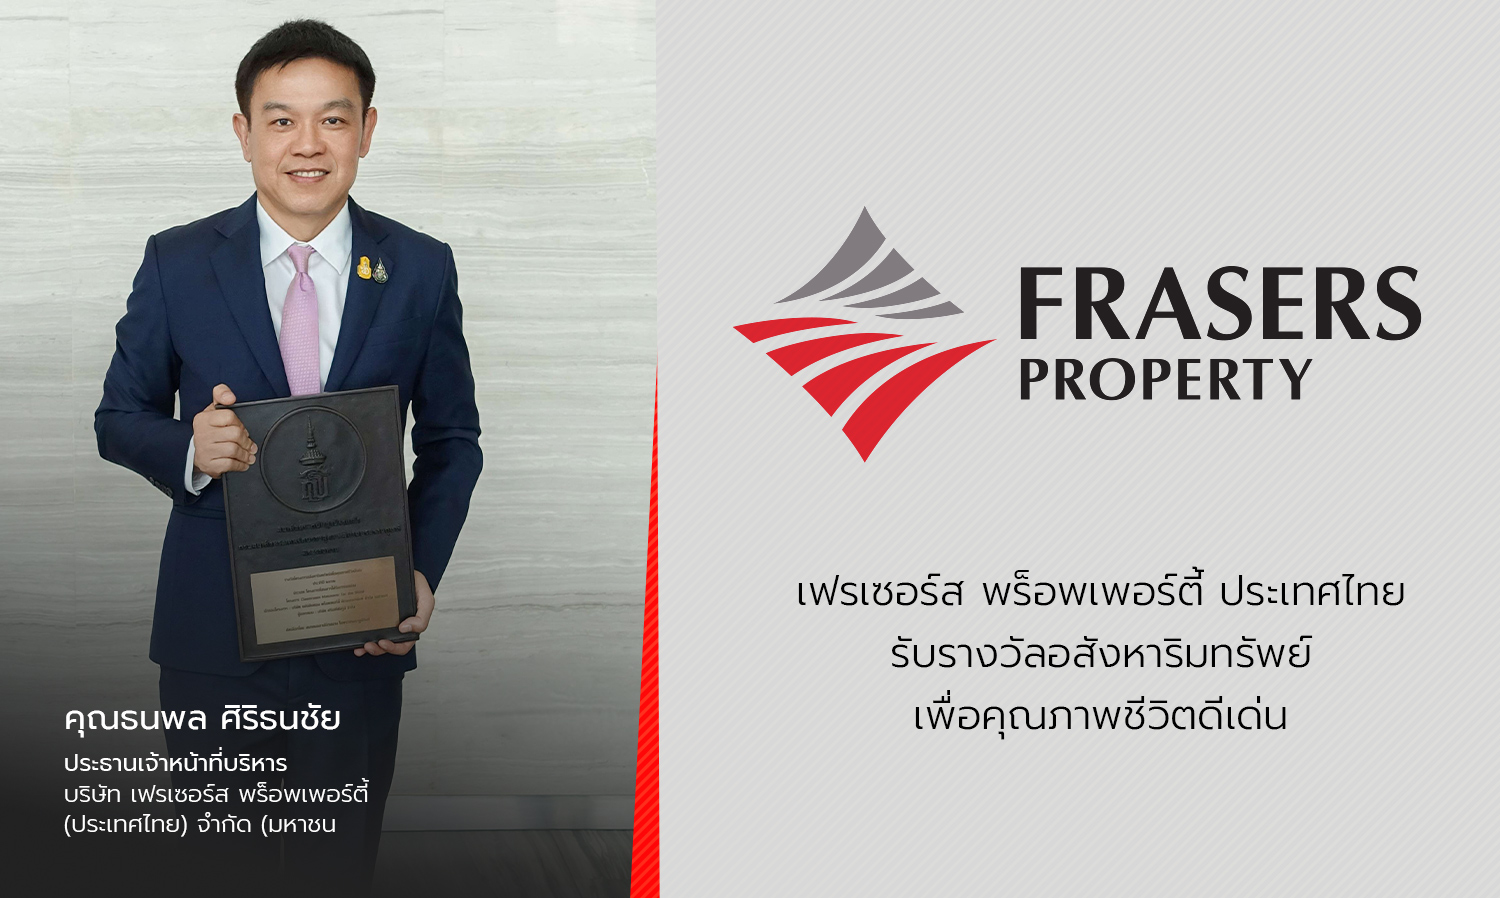 เฟรเซอร์ส พร็อพเพอร์ตี้ ประเทศไทย รับรางวัลอสังหาริมทรัพย์เพื่อคุณภาพชีวิตดีเด่น